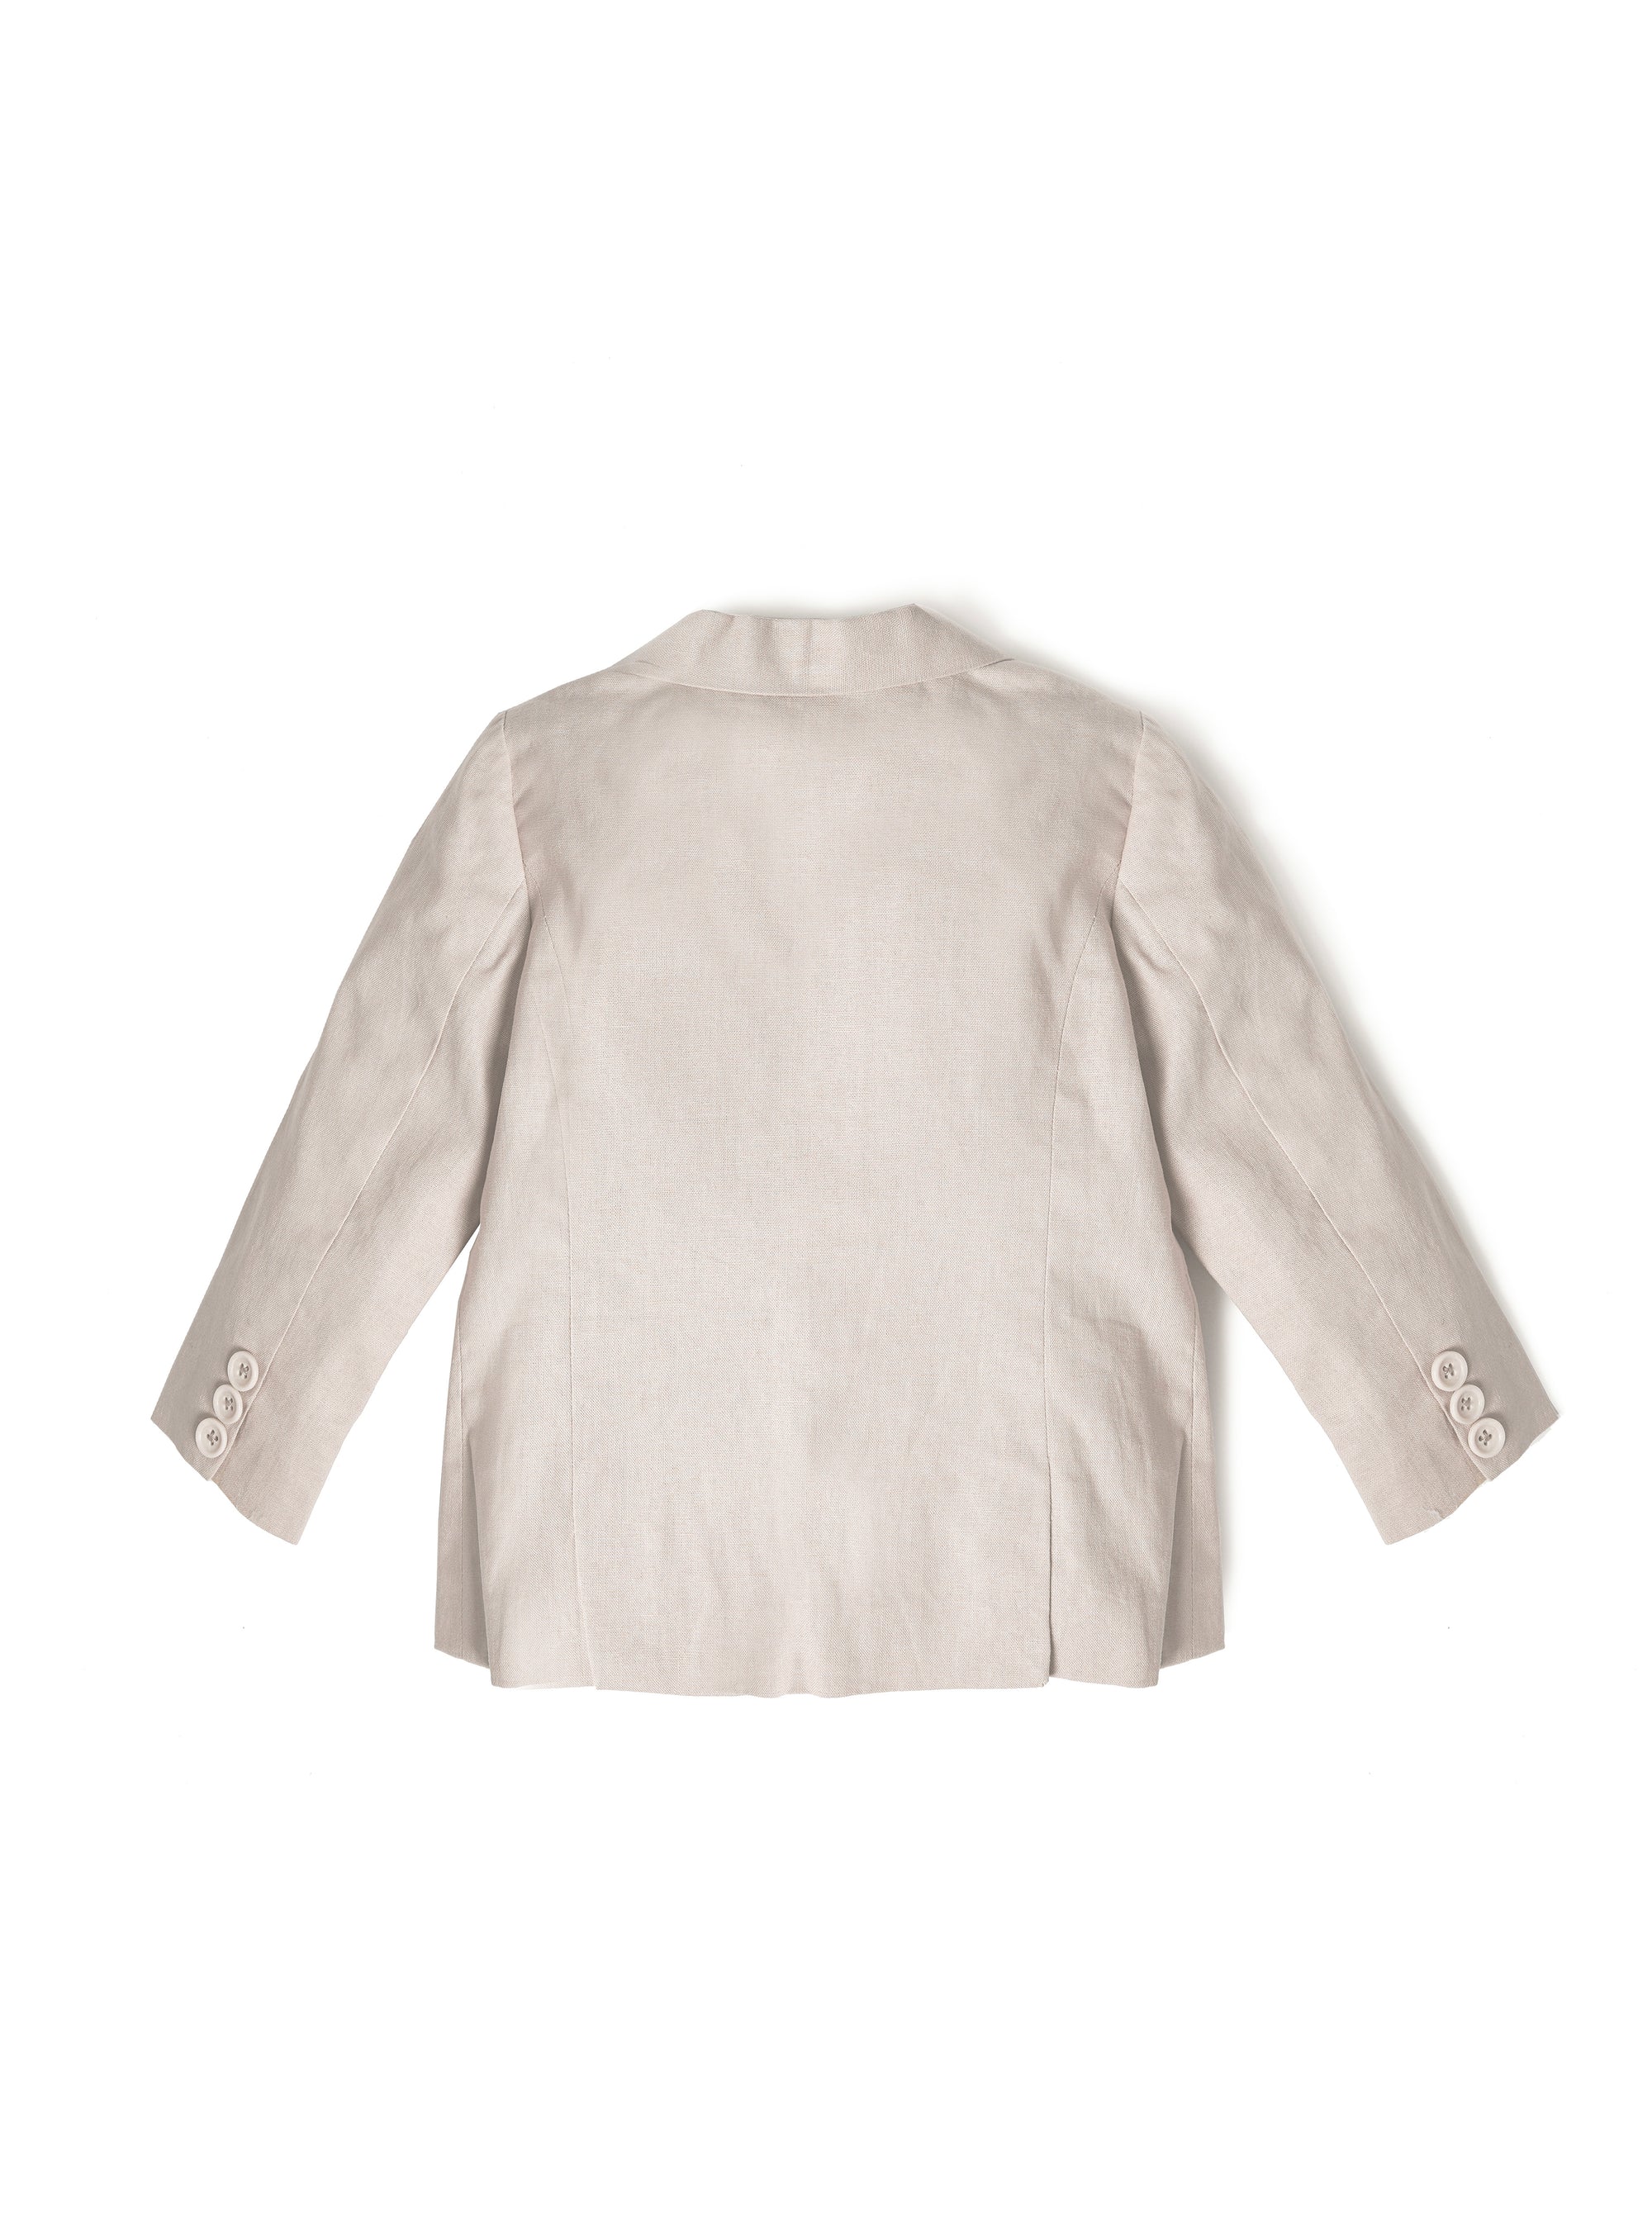 irish cream blazer with off white button